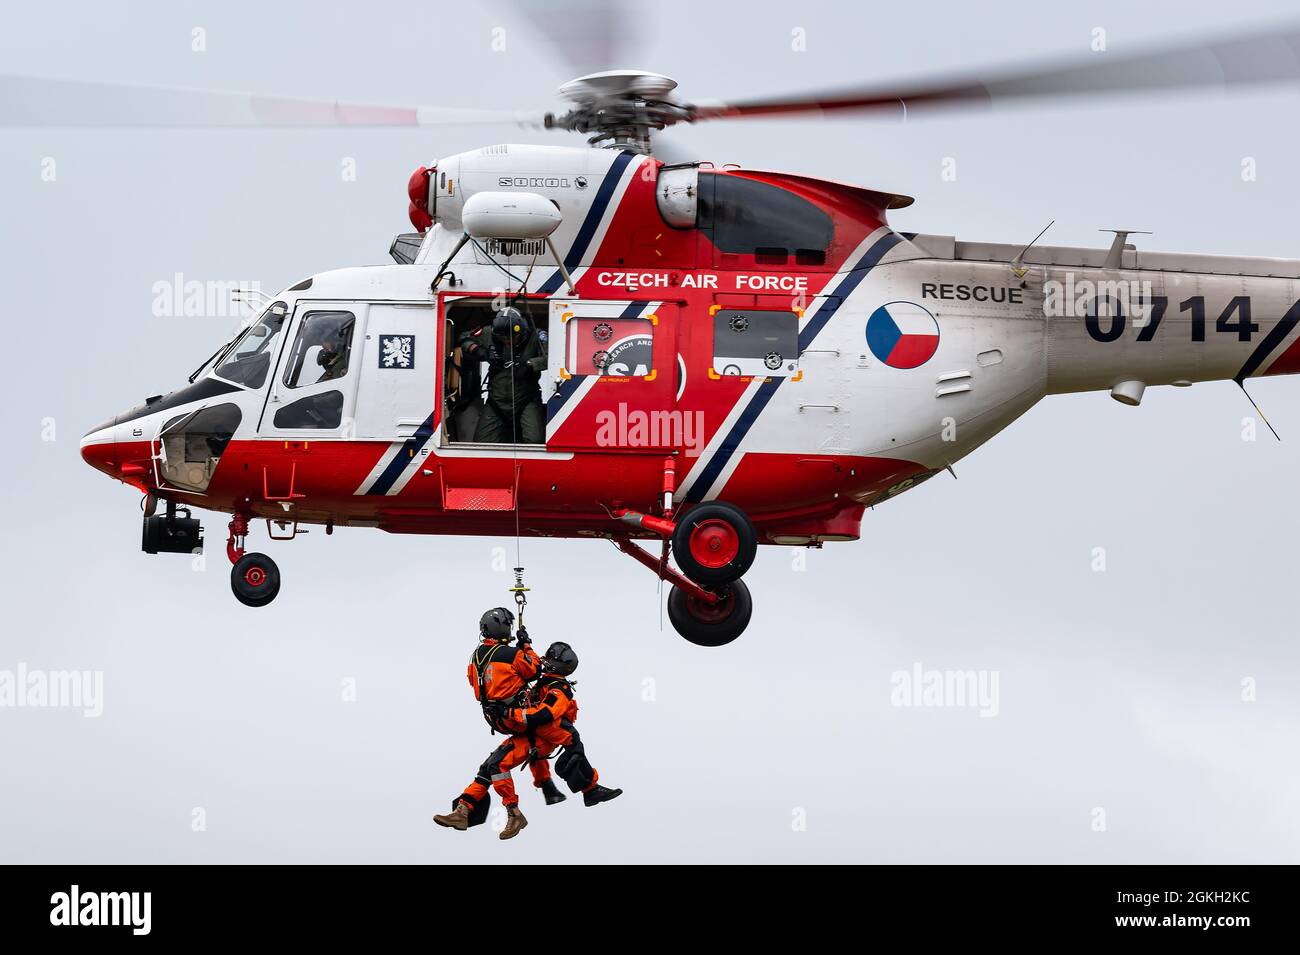 Un hélicoptère de recherche et de sauvetage PZL W-3 Sokół de l'armée de l'air tchèque effectue une émission de secours. Banque D'Images